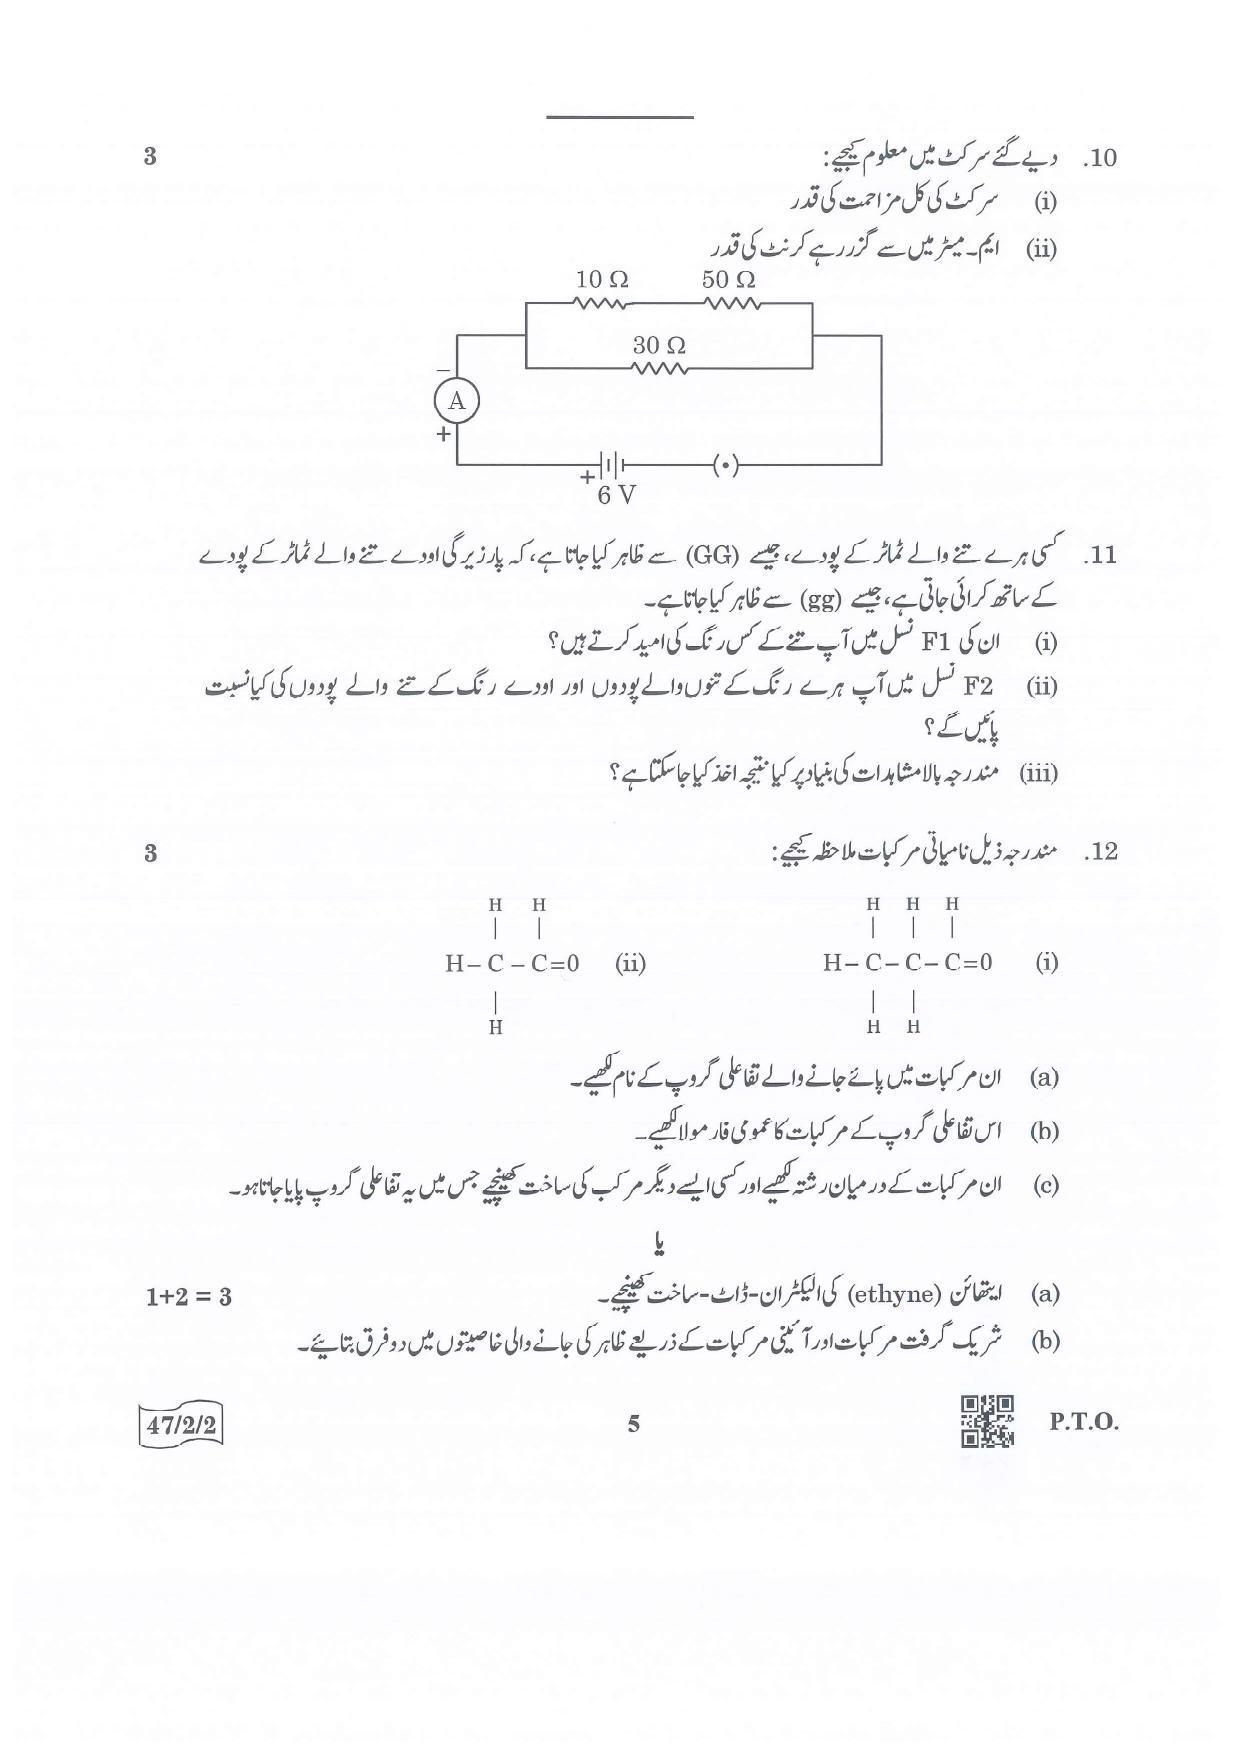 CBSE Class 10 47-2-2 Science Urdu Version.pdf 1 2022 Question Paper - Page 5